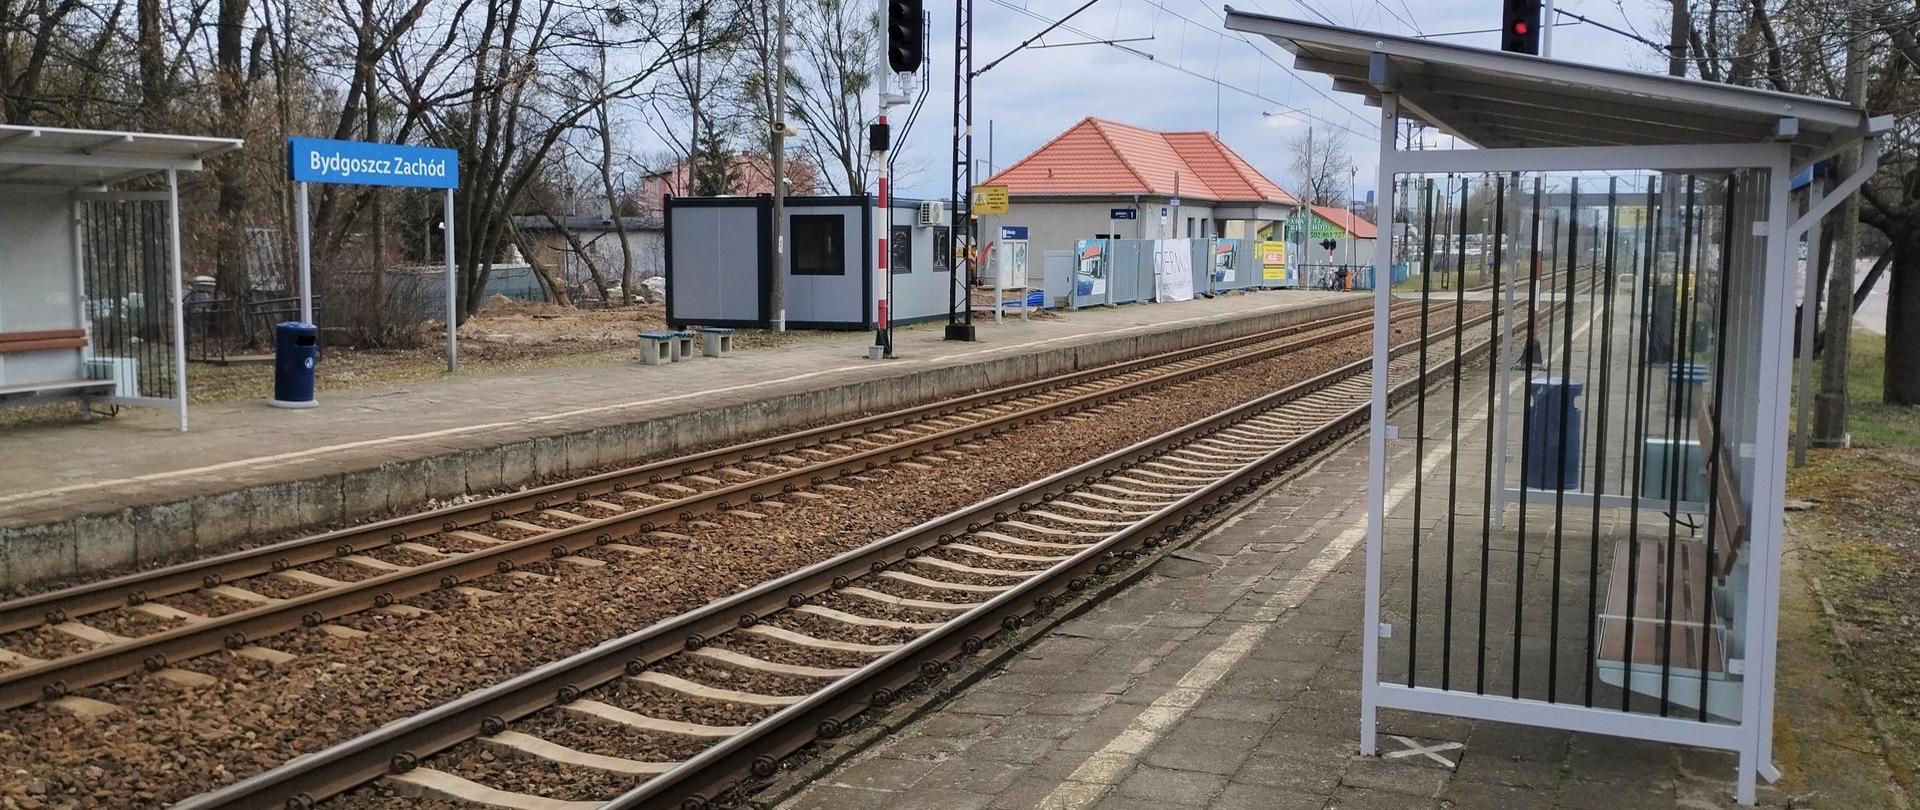 Bydgoszcz zyska lepszy dostęp do kolei